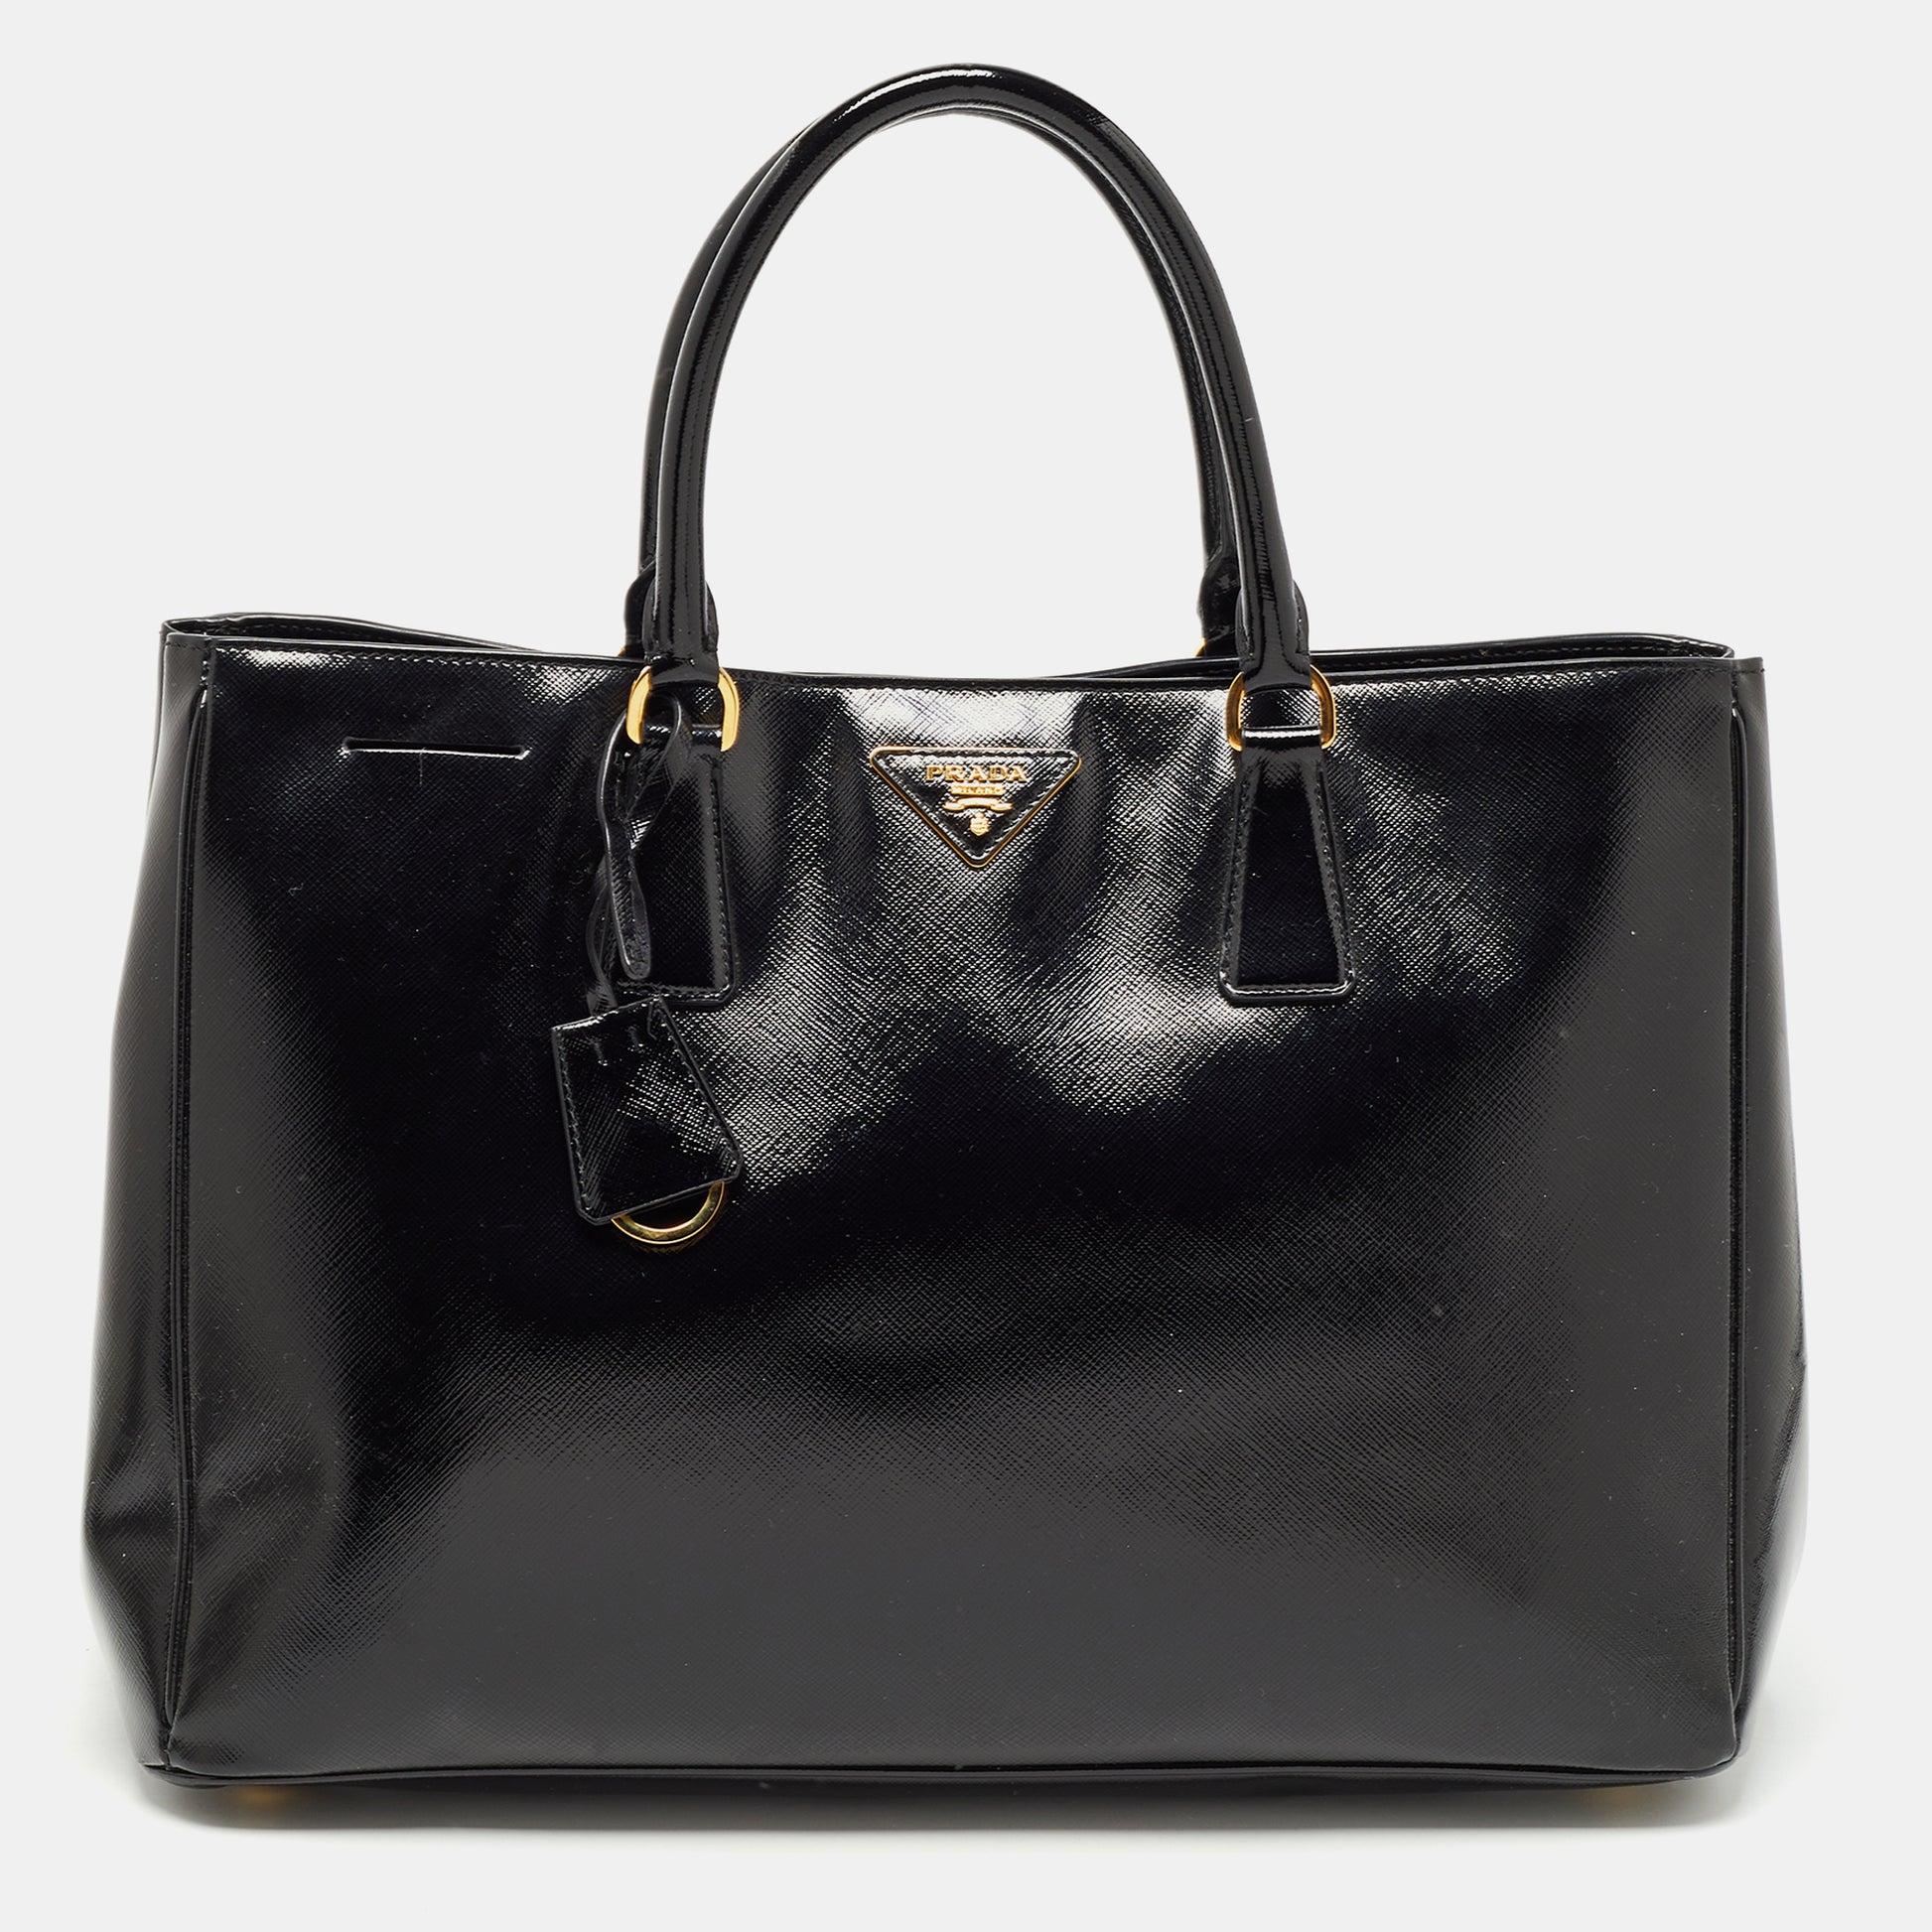 Prada Saffiano leather shoulder bag replica